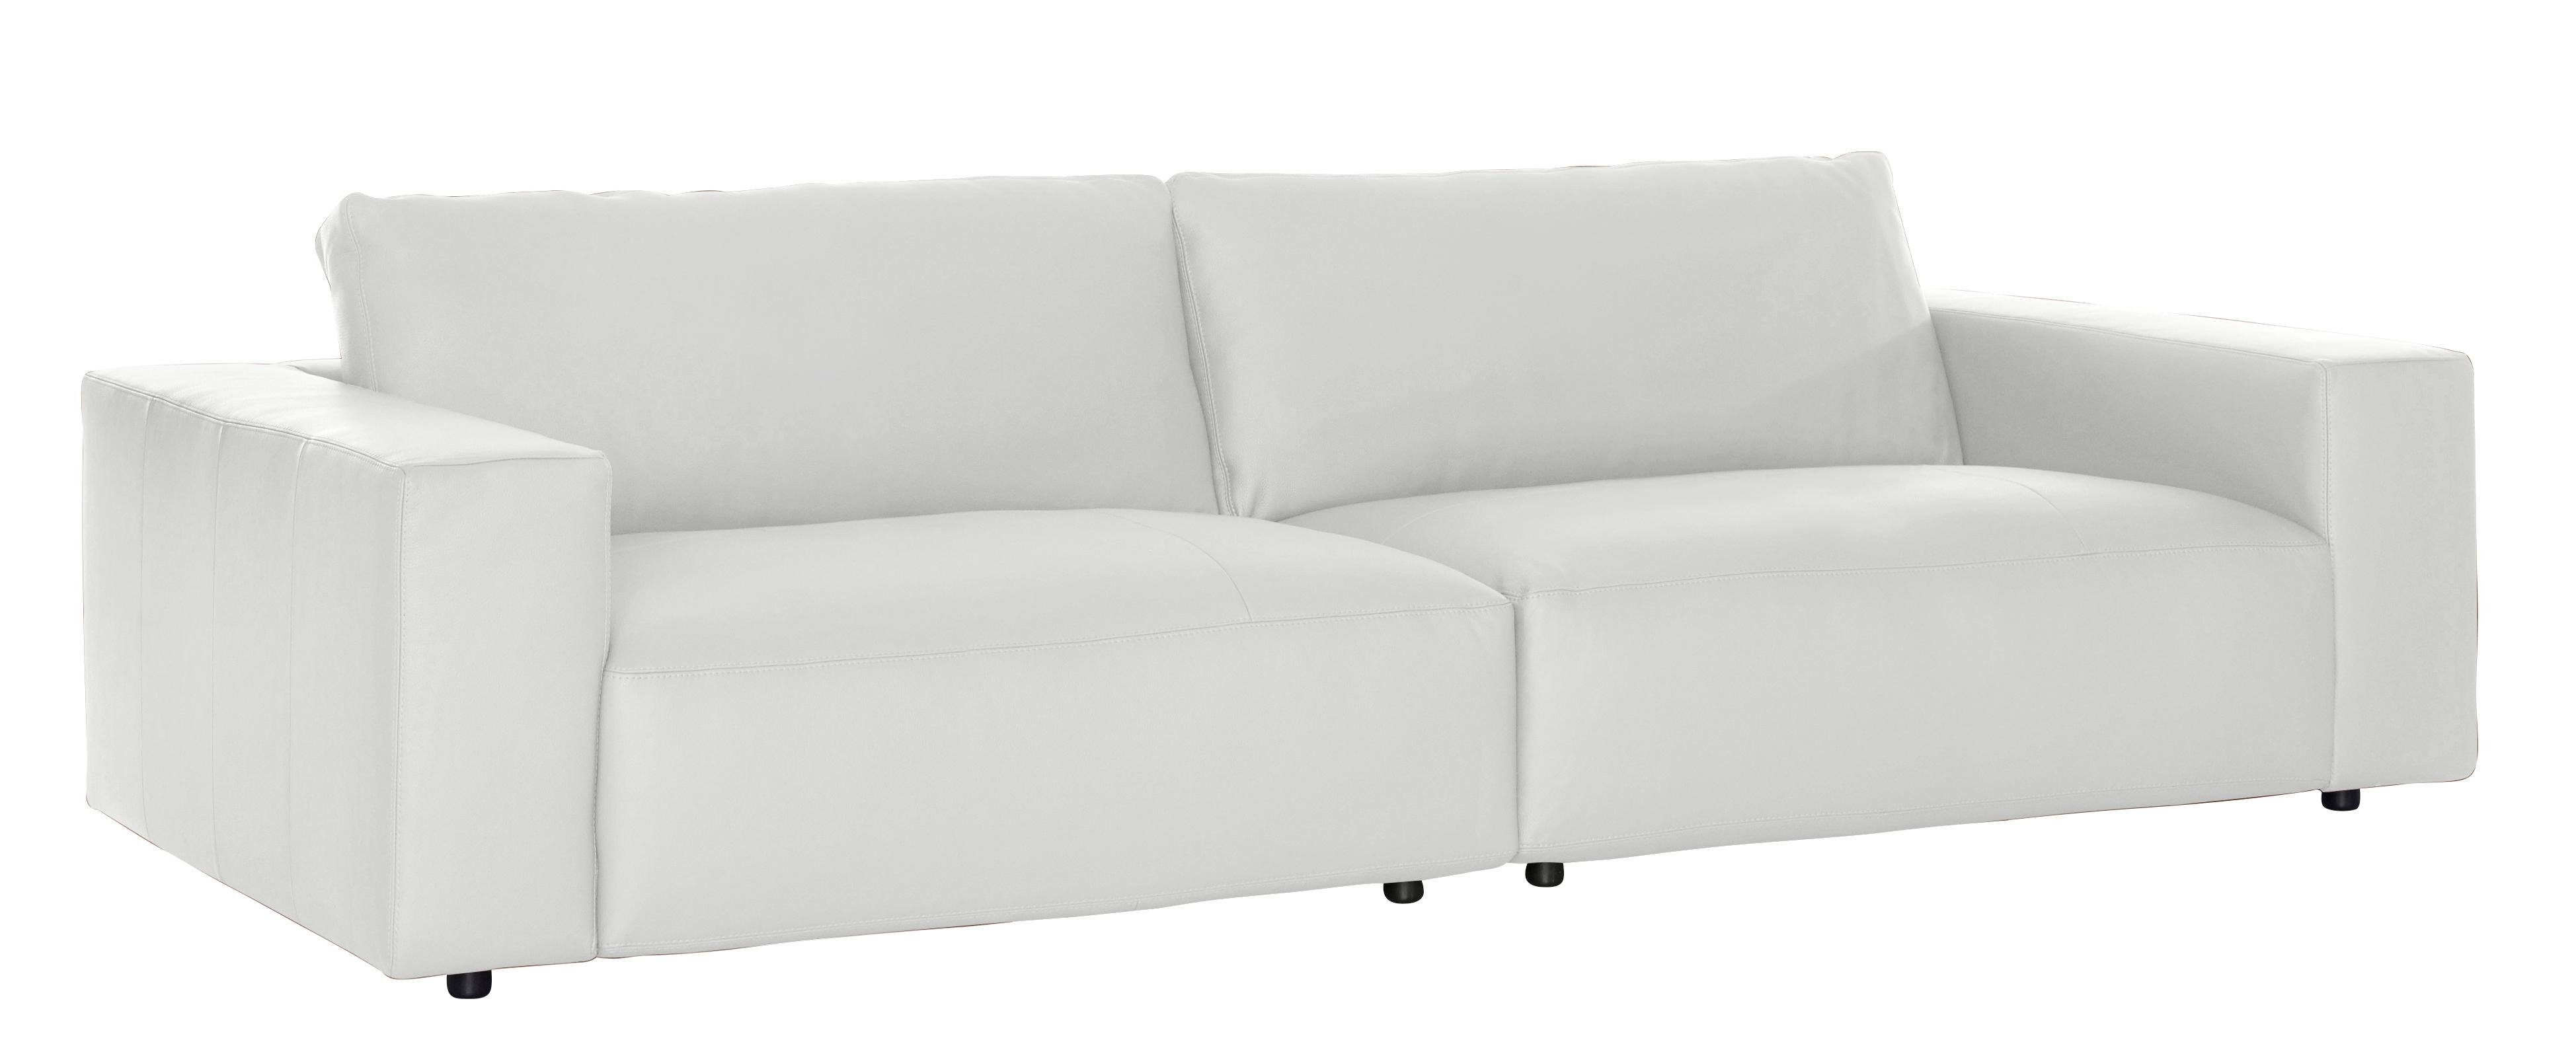 GALLERY M vielen unterschiedlichen Qualitäten 3-Sitzer Musterring in by 4 Big-Sofa branded LUCIA, Nähten, und